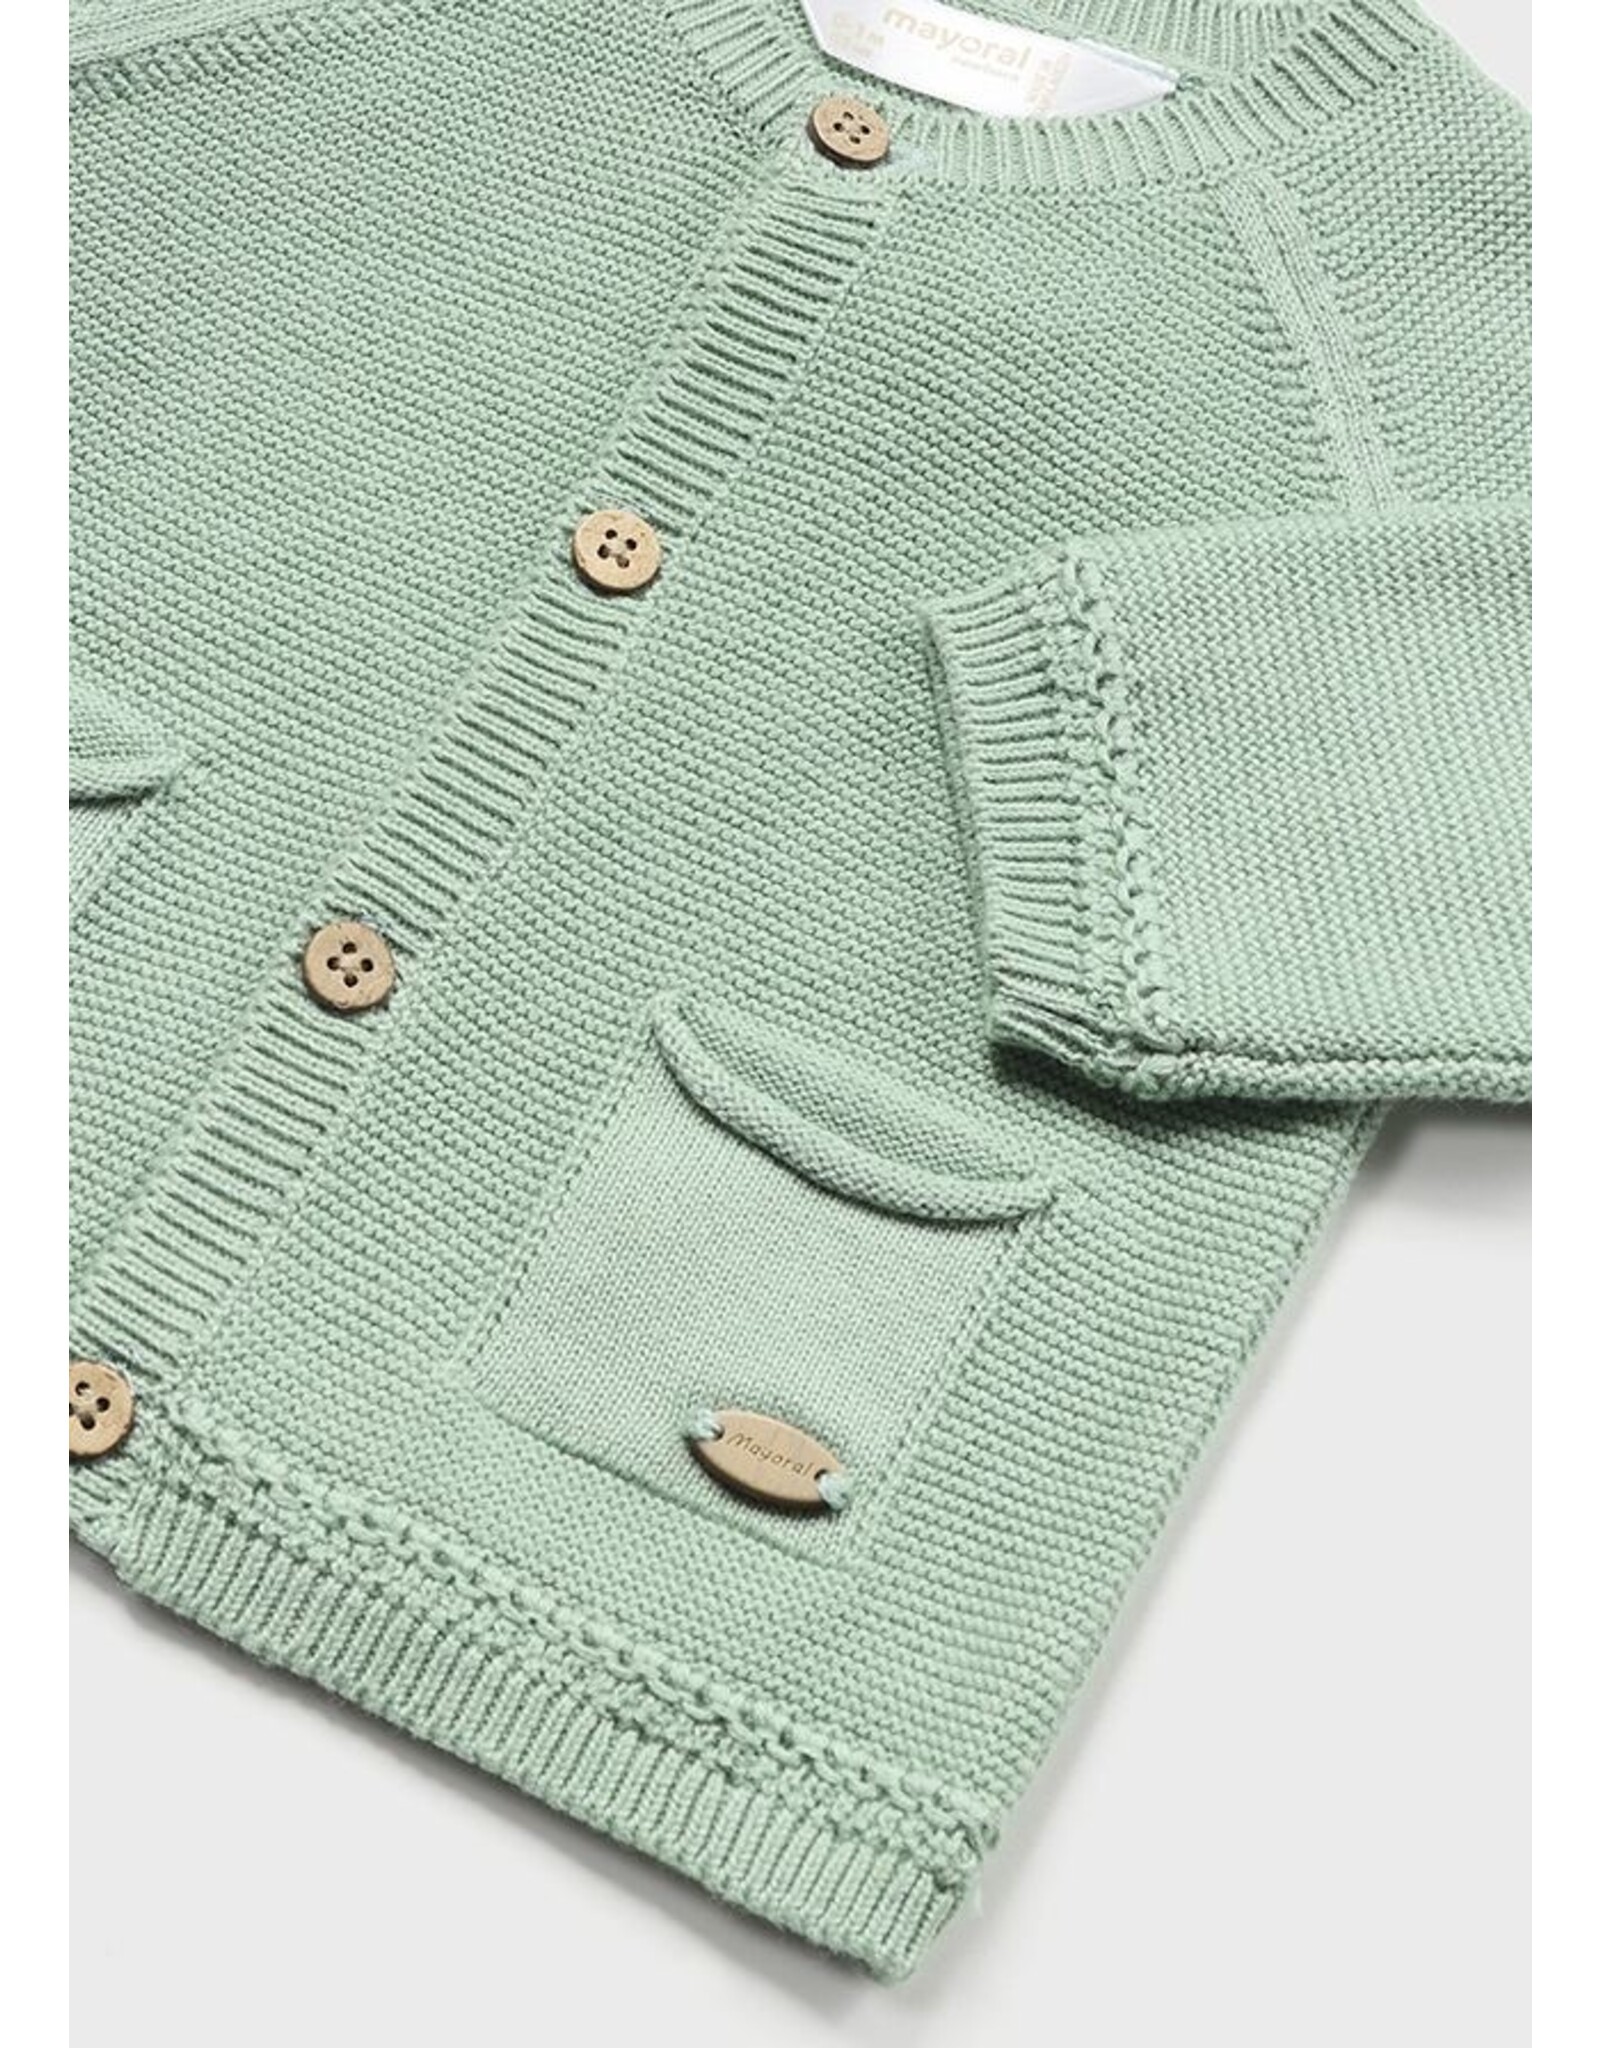 Mayoral Aqua Green Baby Knit Cardigan Neutral